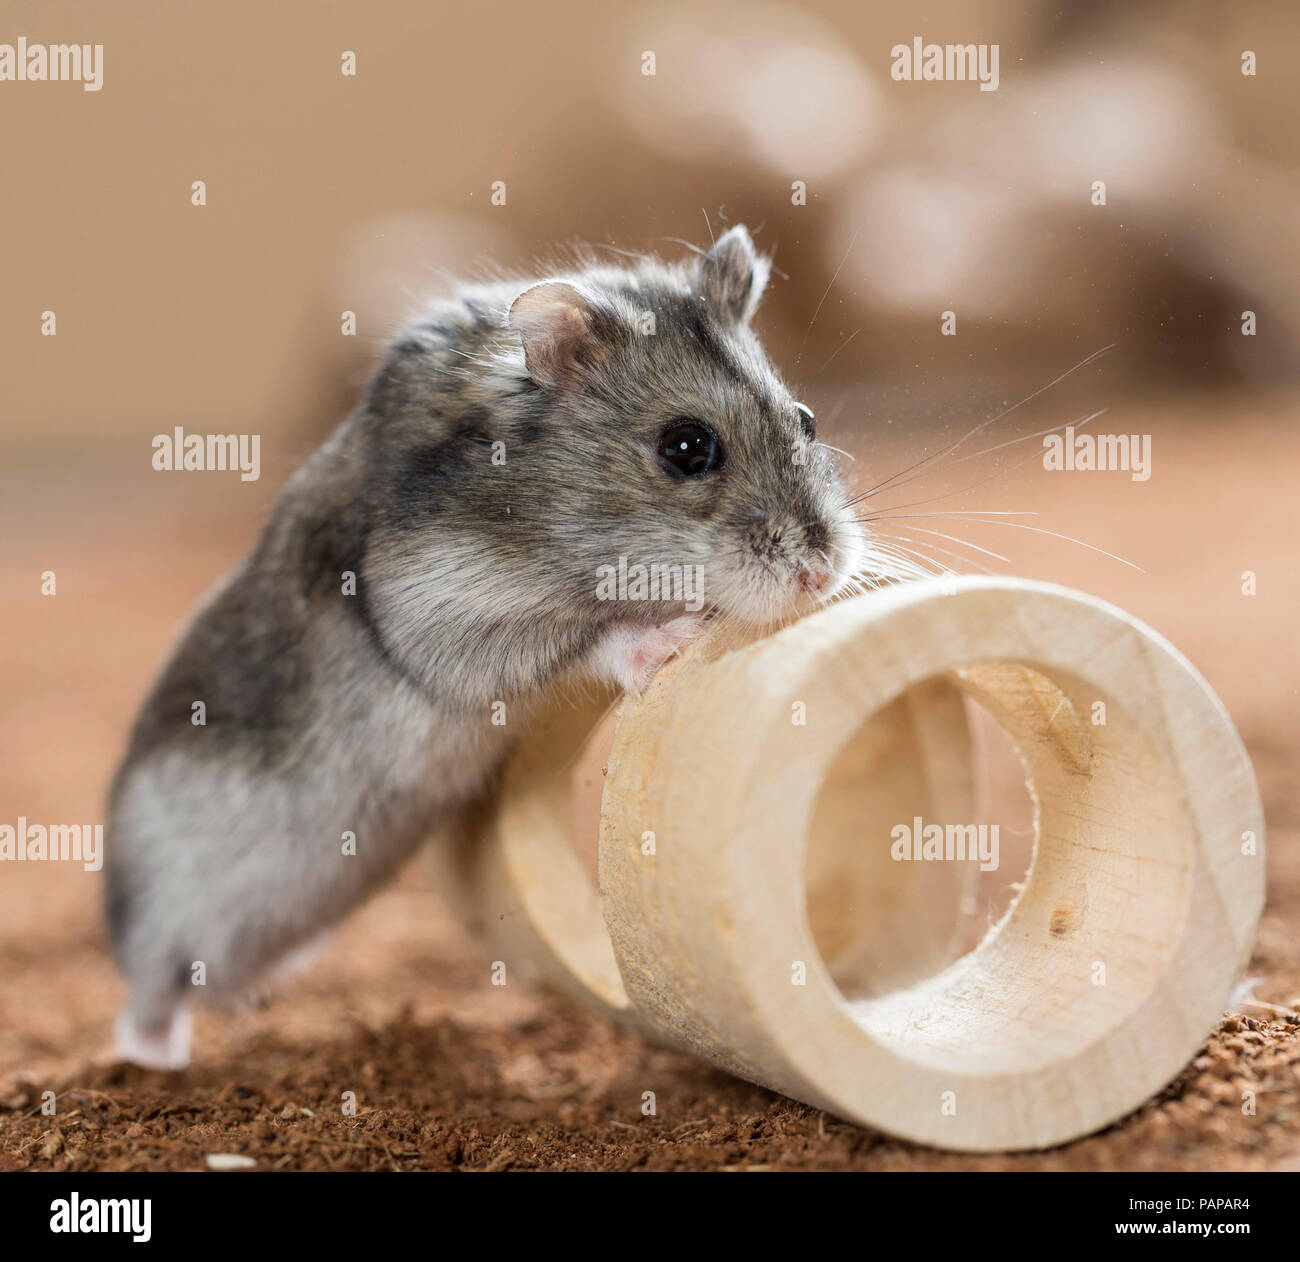 Hamster Djungarian (Phodopus sungorus). Des profils à côté d'un jouet en bois. Allemagne Banque D'Images